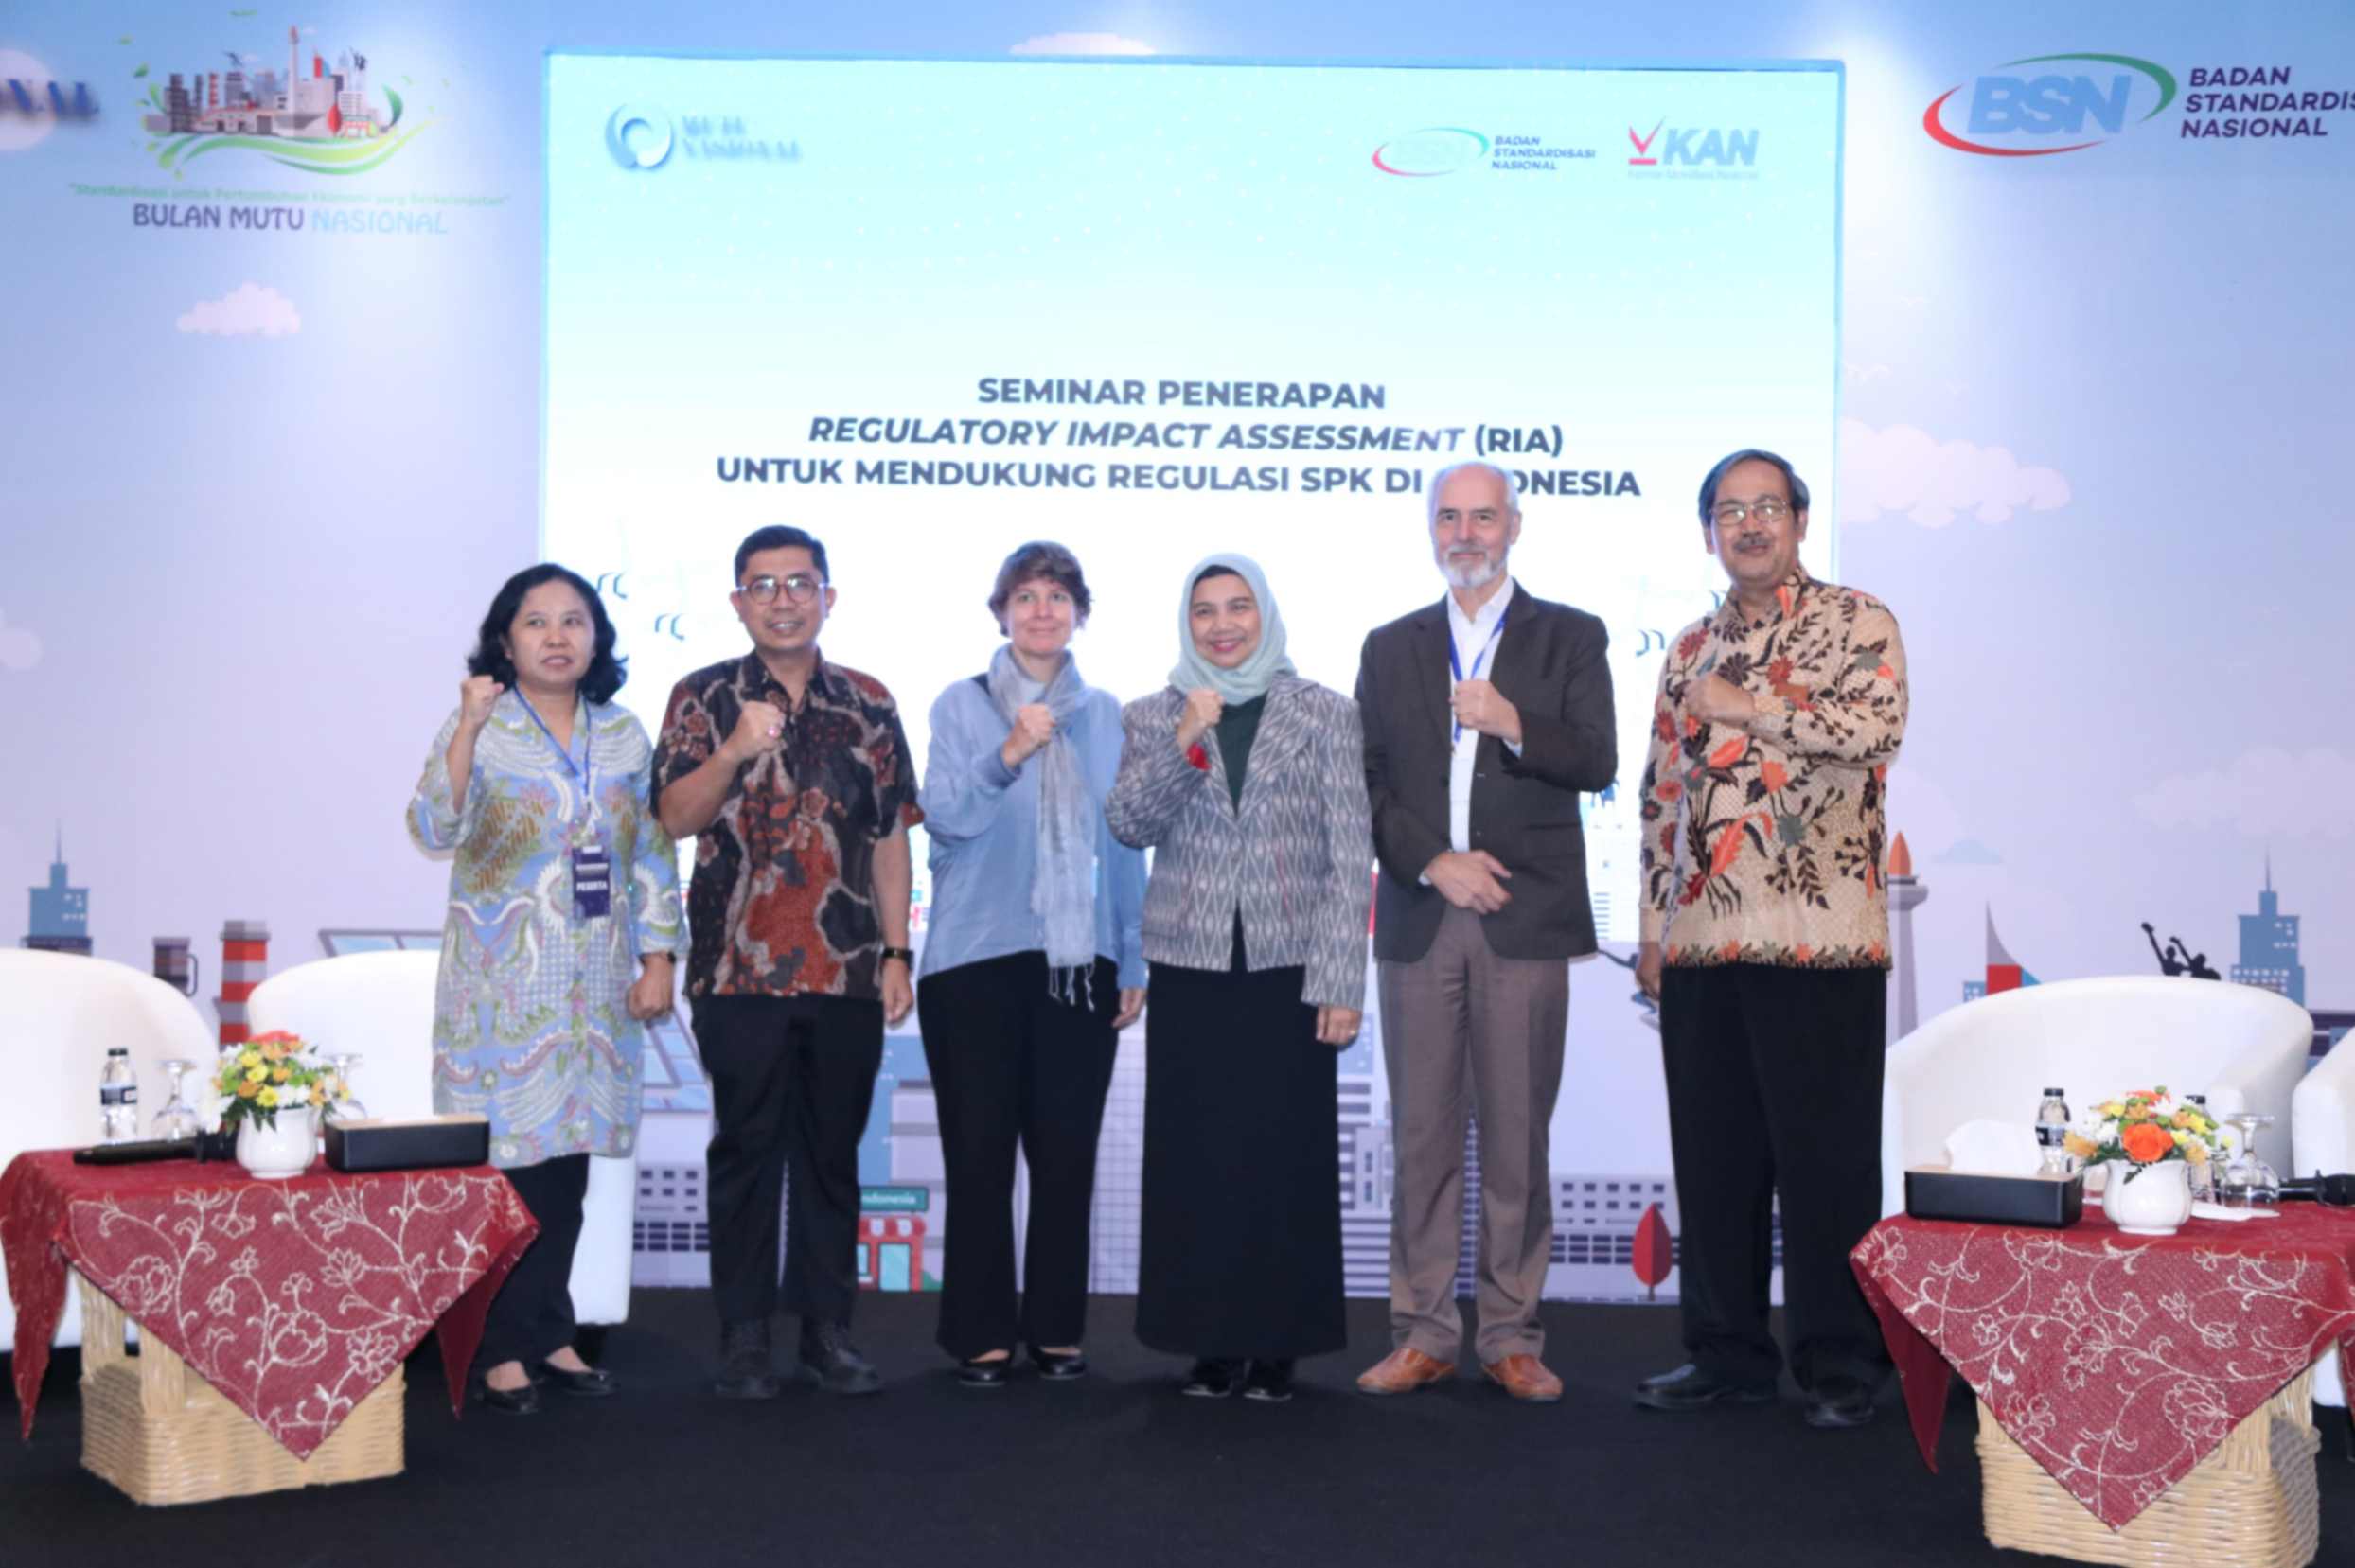 Penerapan RIA untuk Mendukung Regulasi SPK di Indonesia – BSN – Badan Standardisasi Nasional – Badan Standar Nasional Indonesia